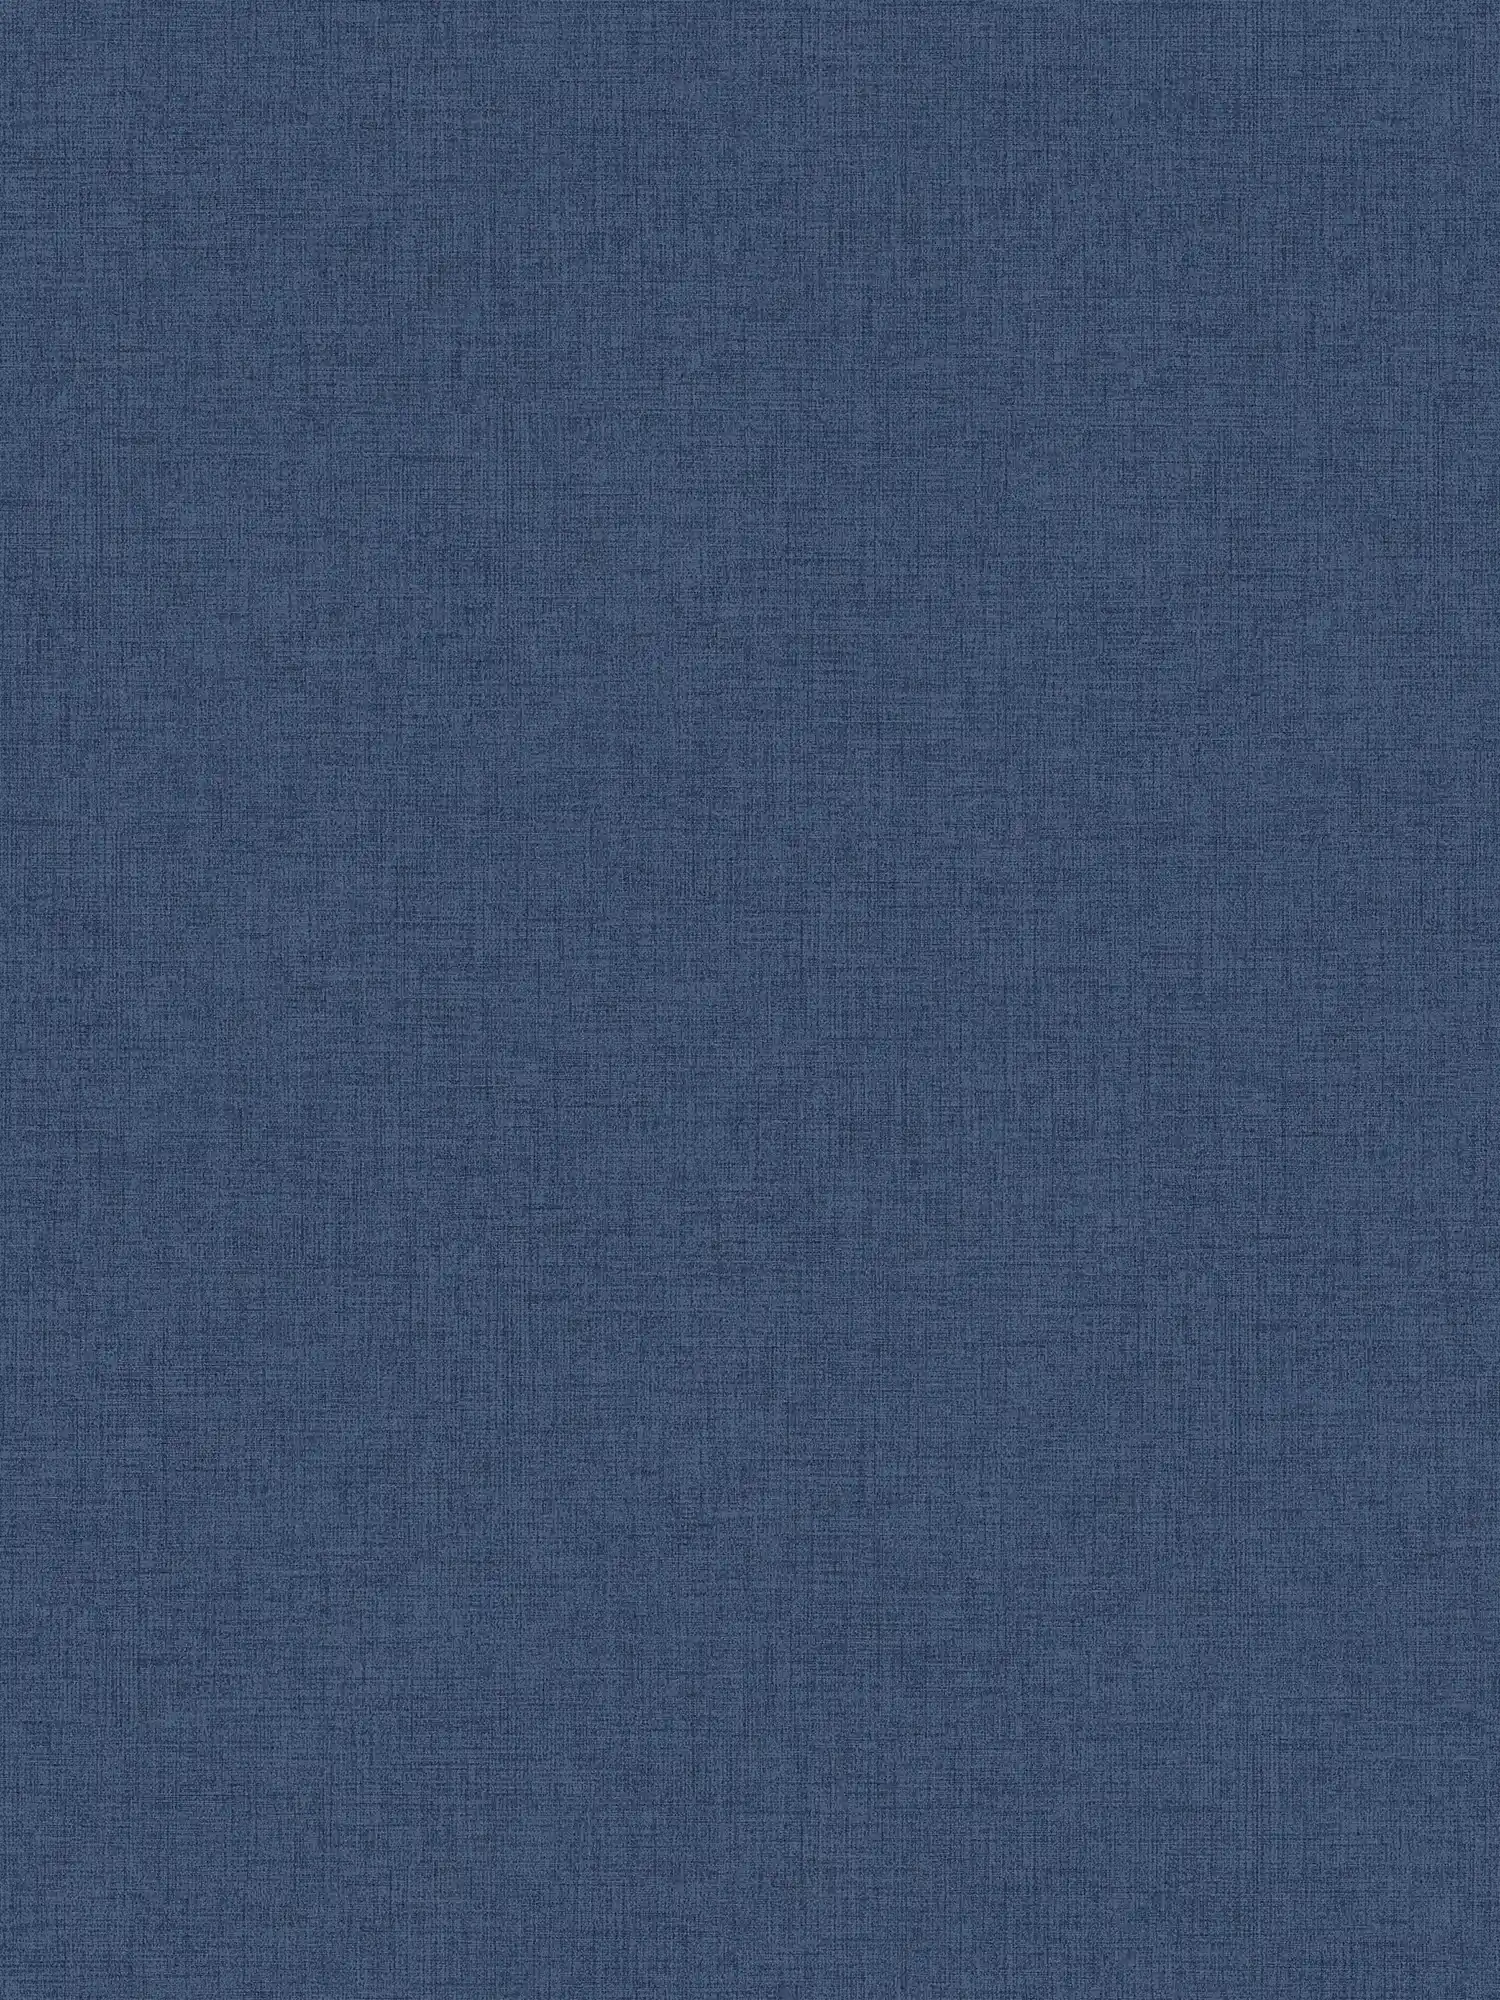 Bleu marine papier peint aspect lin, Navy - Bleu
